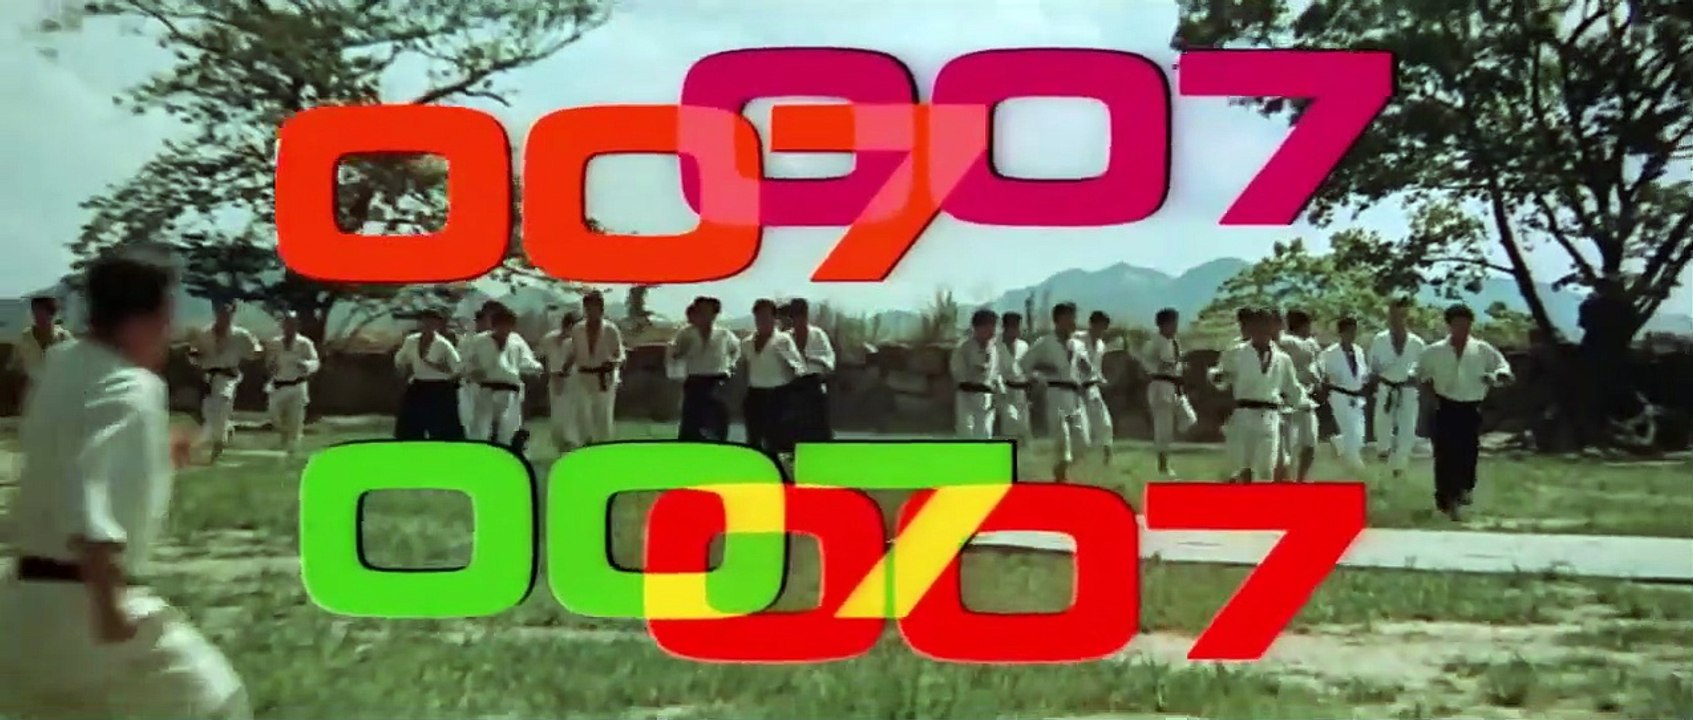 James Bond 007 - Man lebt nur zweimal | movie | 1967 | Official Trailer